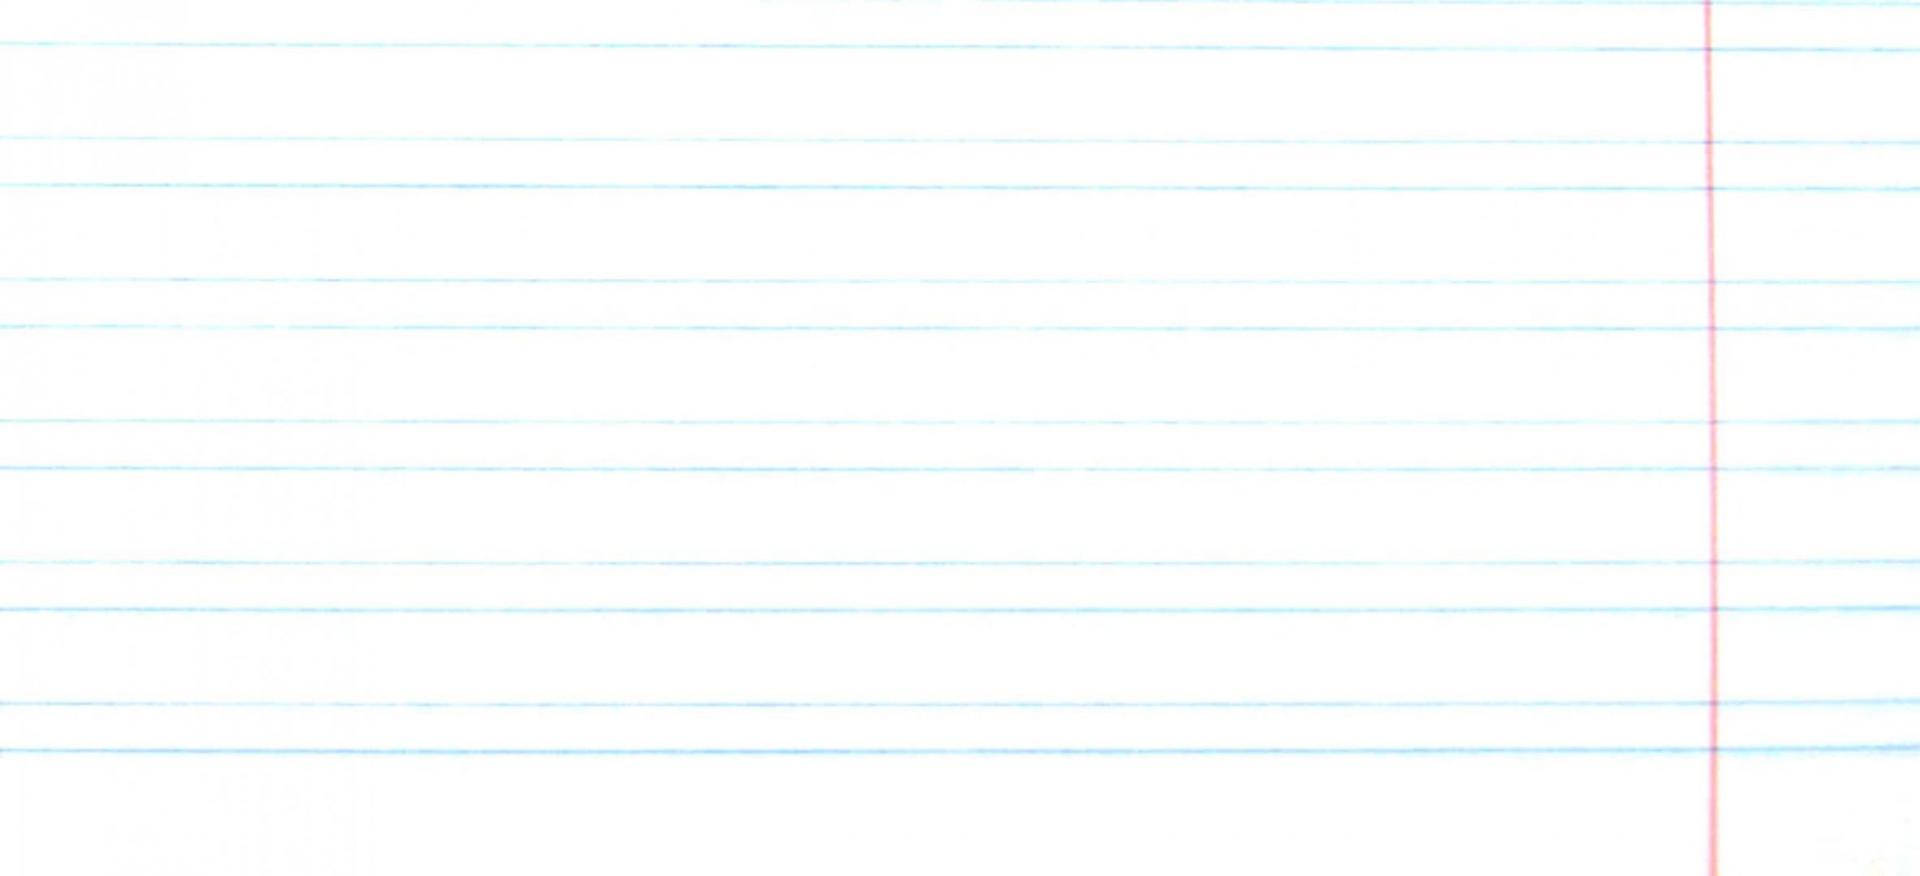 Иллюстрация 1 из 5 для Тетрадь школьная "One Color" (голубая, 12 листов, узкая линия) (7-12-270/5) | Лабиринт - канцтовы. Источник: Лабиринт